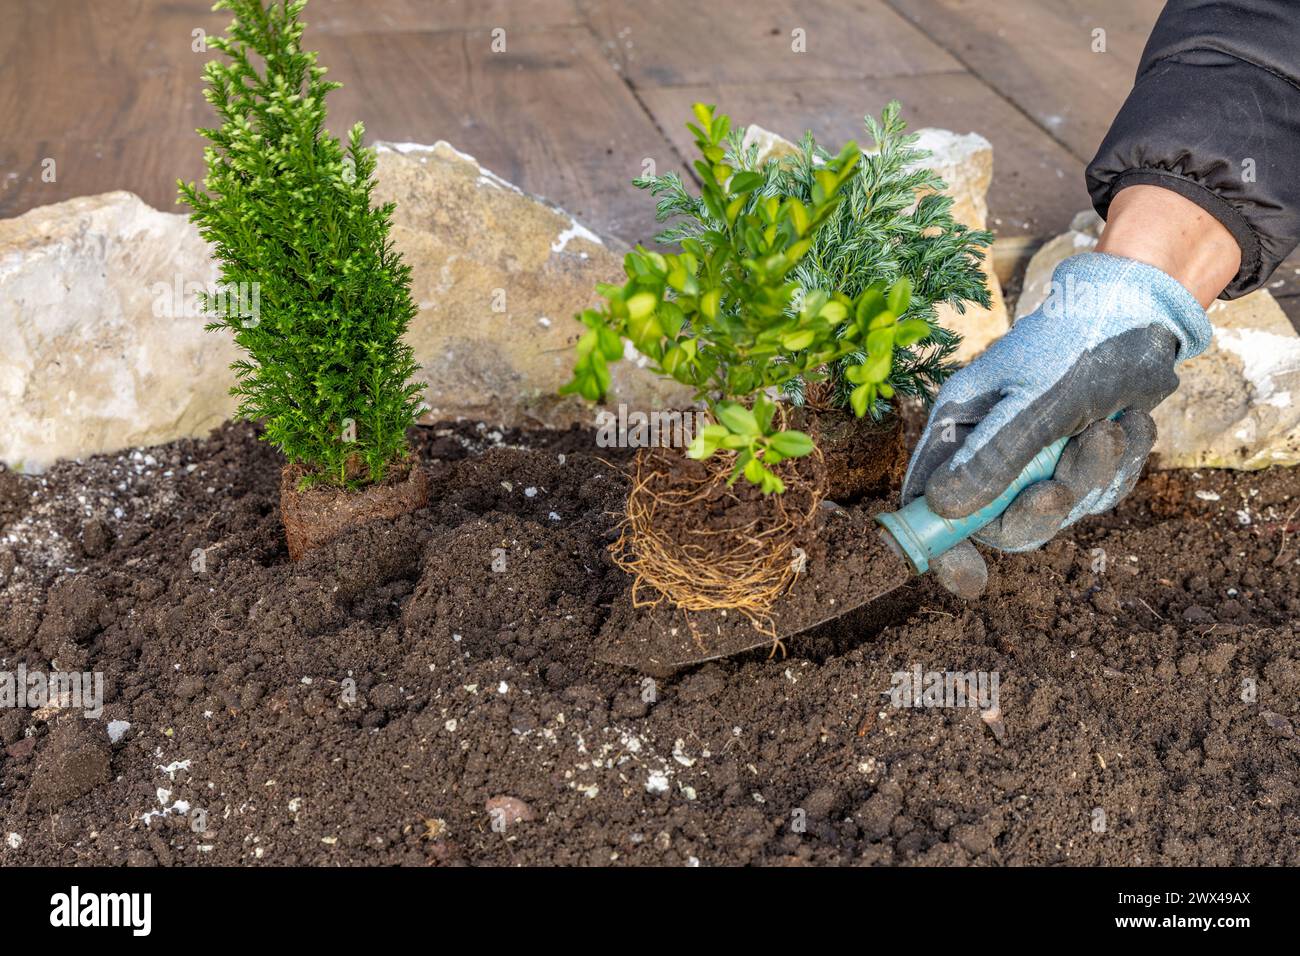 Planter des arbustes de conifères, construire une rocaille dans le jardin, ranger le jardin au printemps, planter des plantes dans le sol Banque D'Images